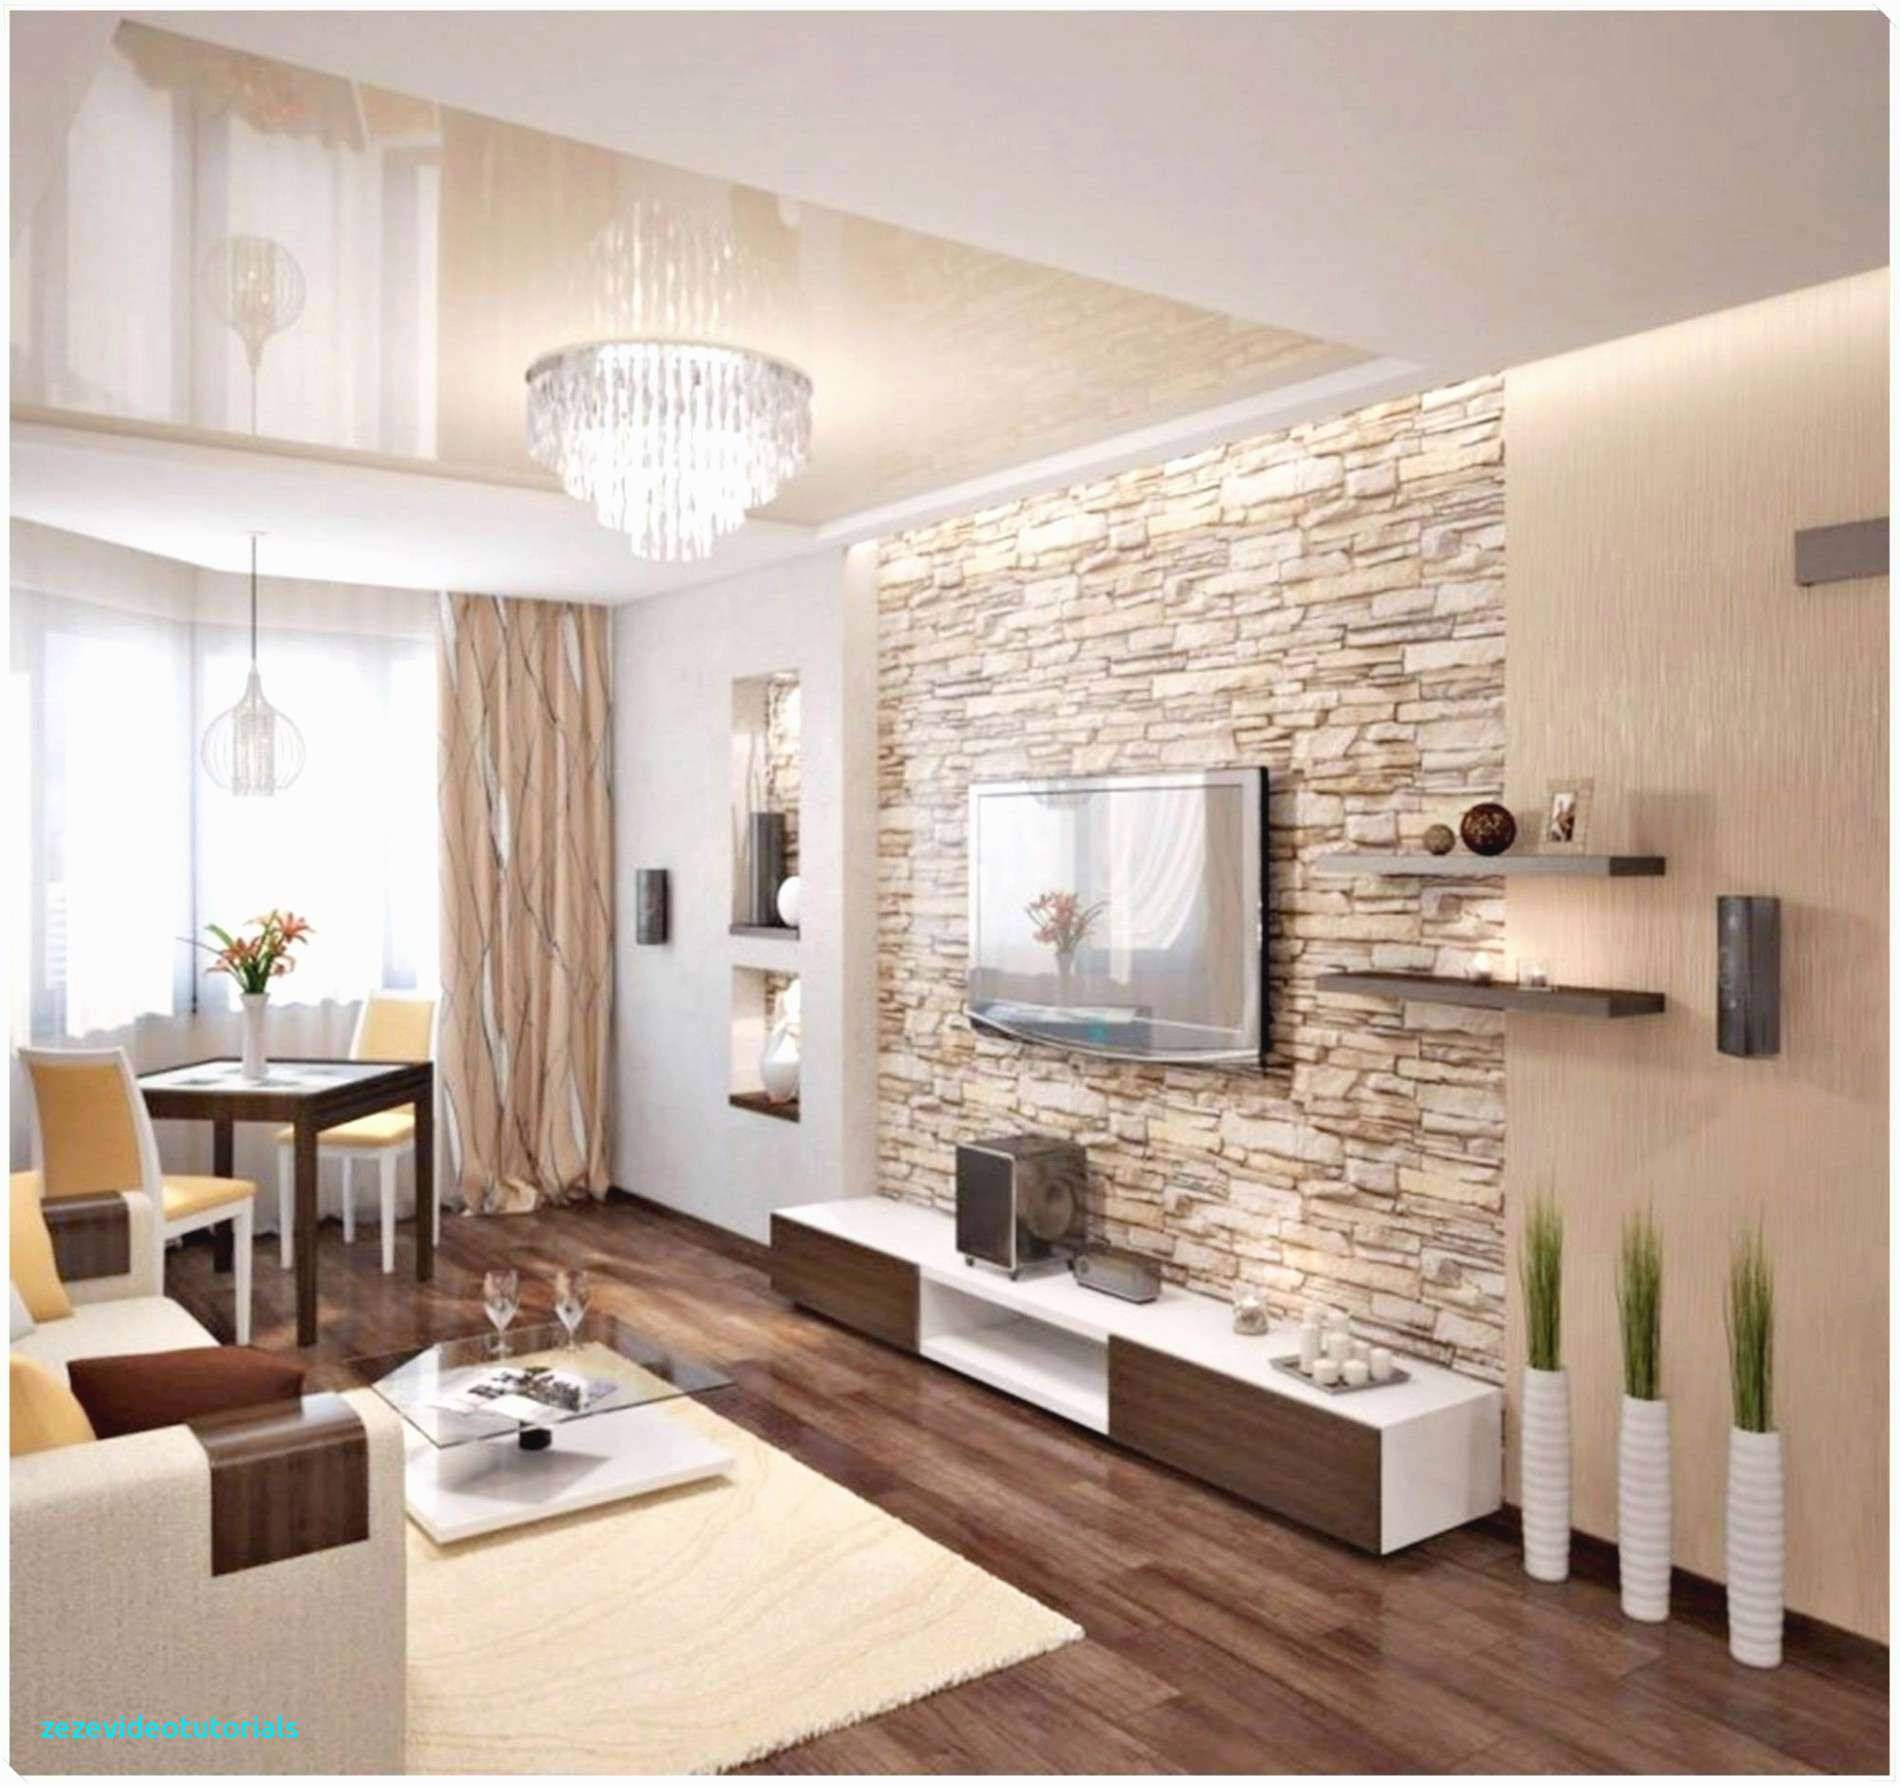 Deko Online Bestellen Elegant 29 Reizend Wohnzimmer Deko Line Shop Inspirierend